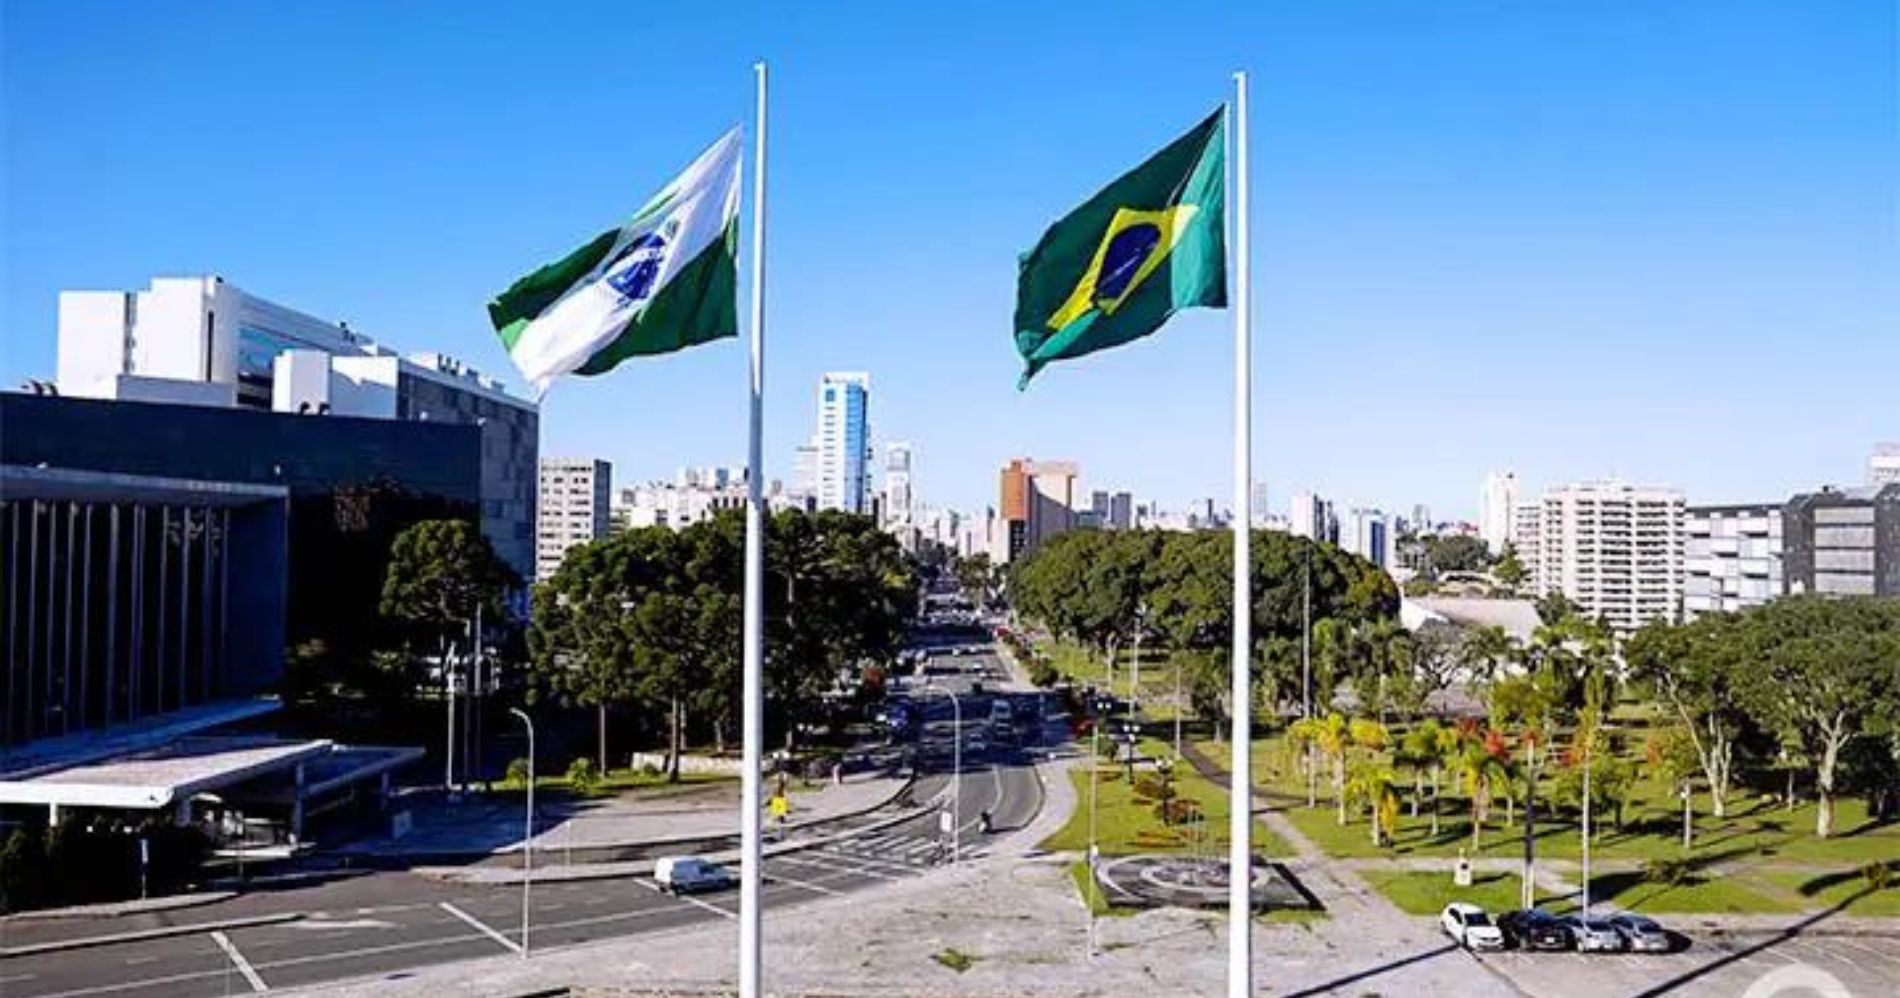 Levantamento revela presença de oito municípios paranaenses entre as 100 principais economias do Brasil